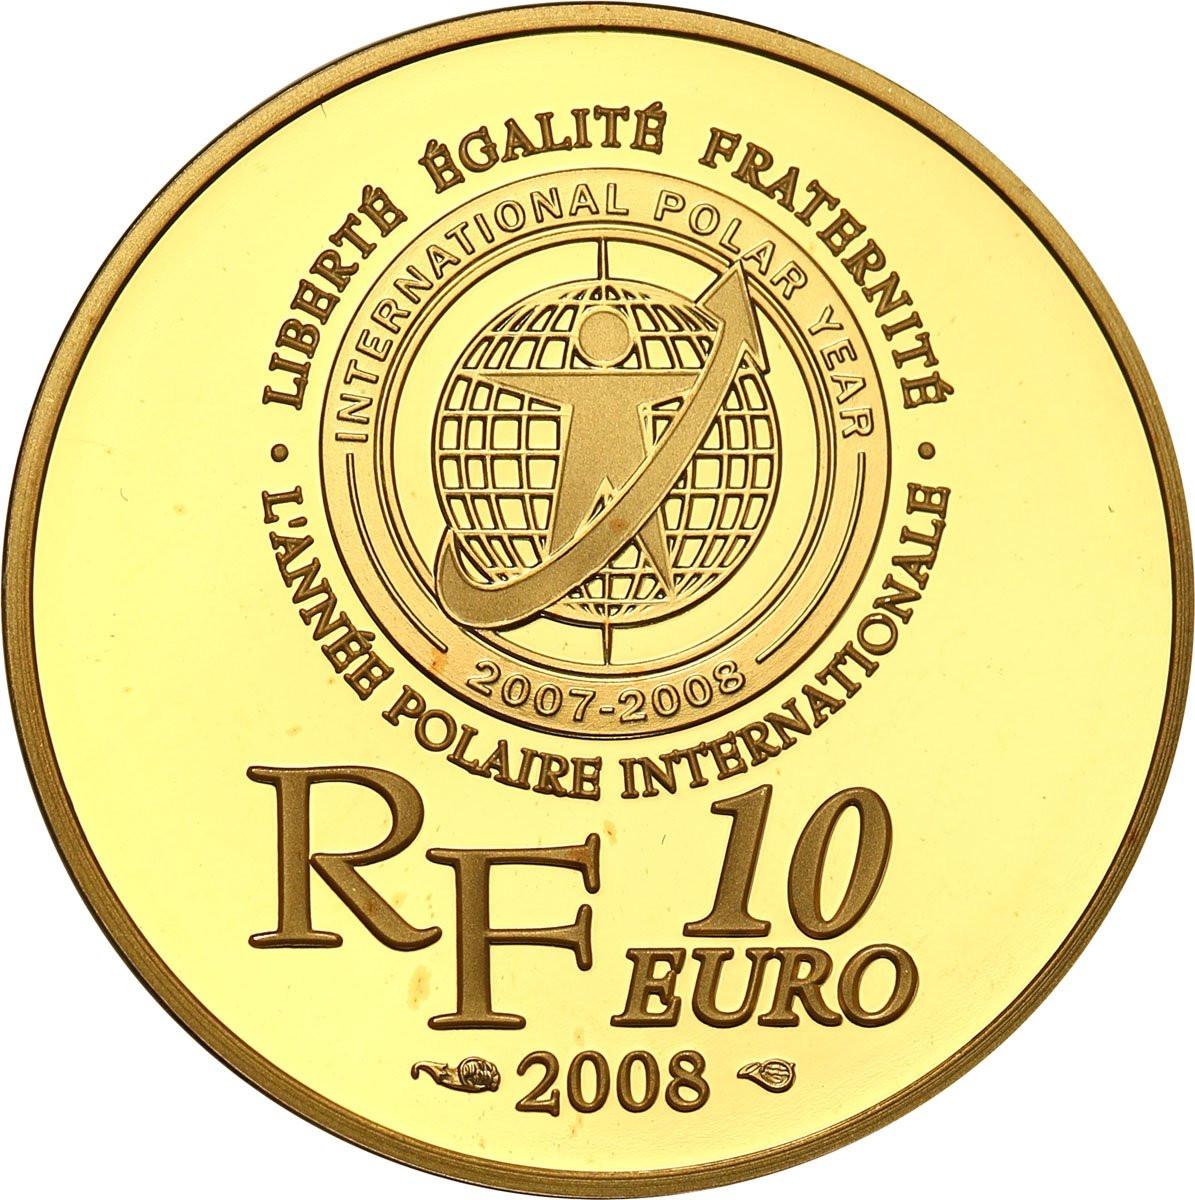 Francja. 10 Euro 2008 - Ziemia Adélie - 1./4 uncji złota